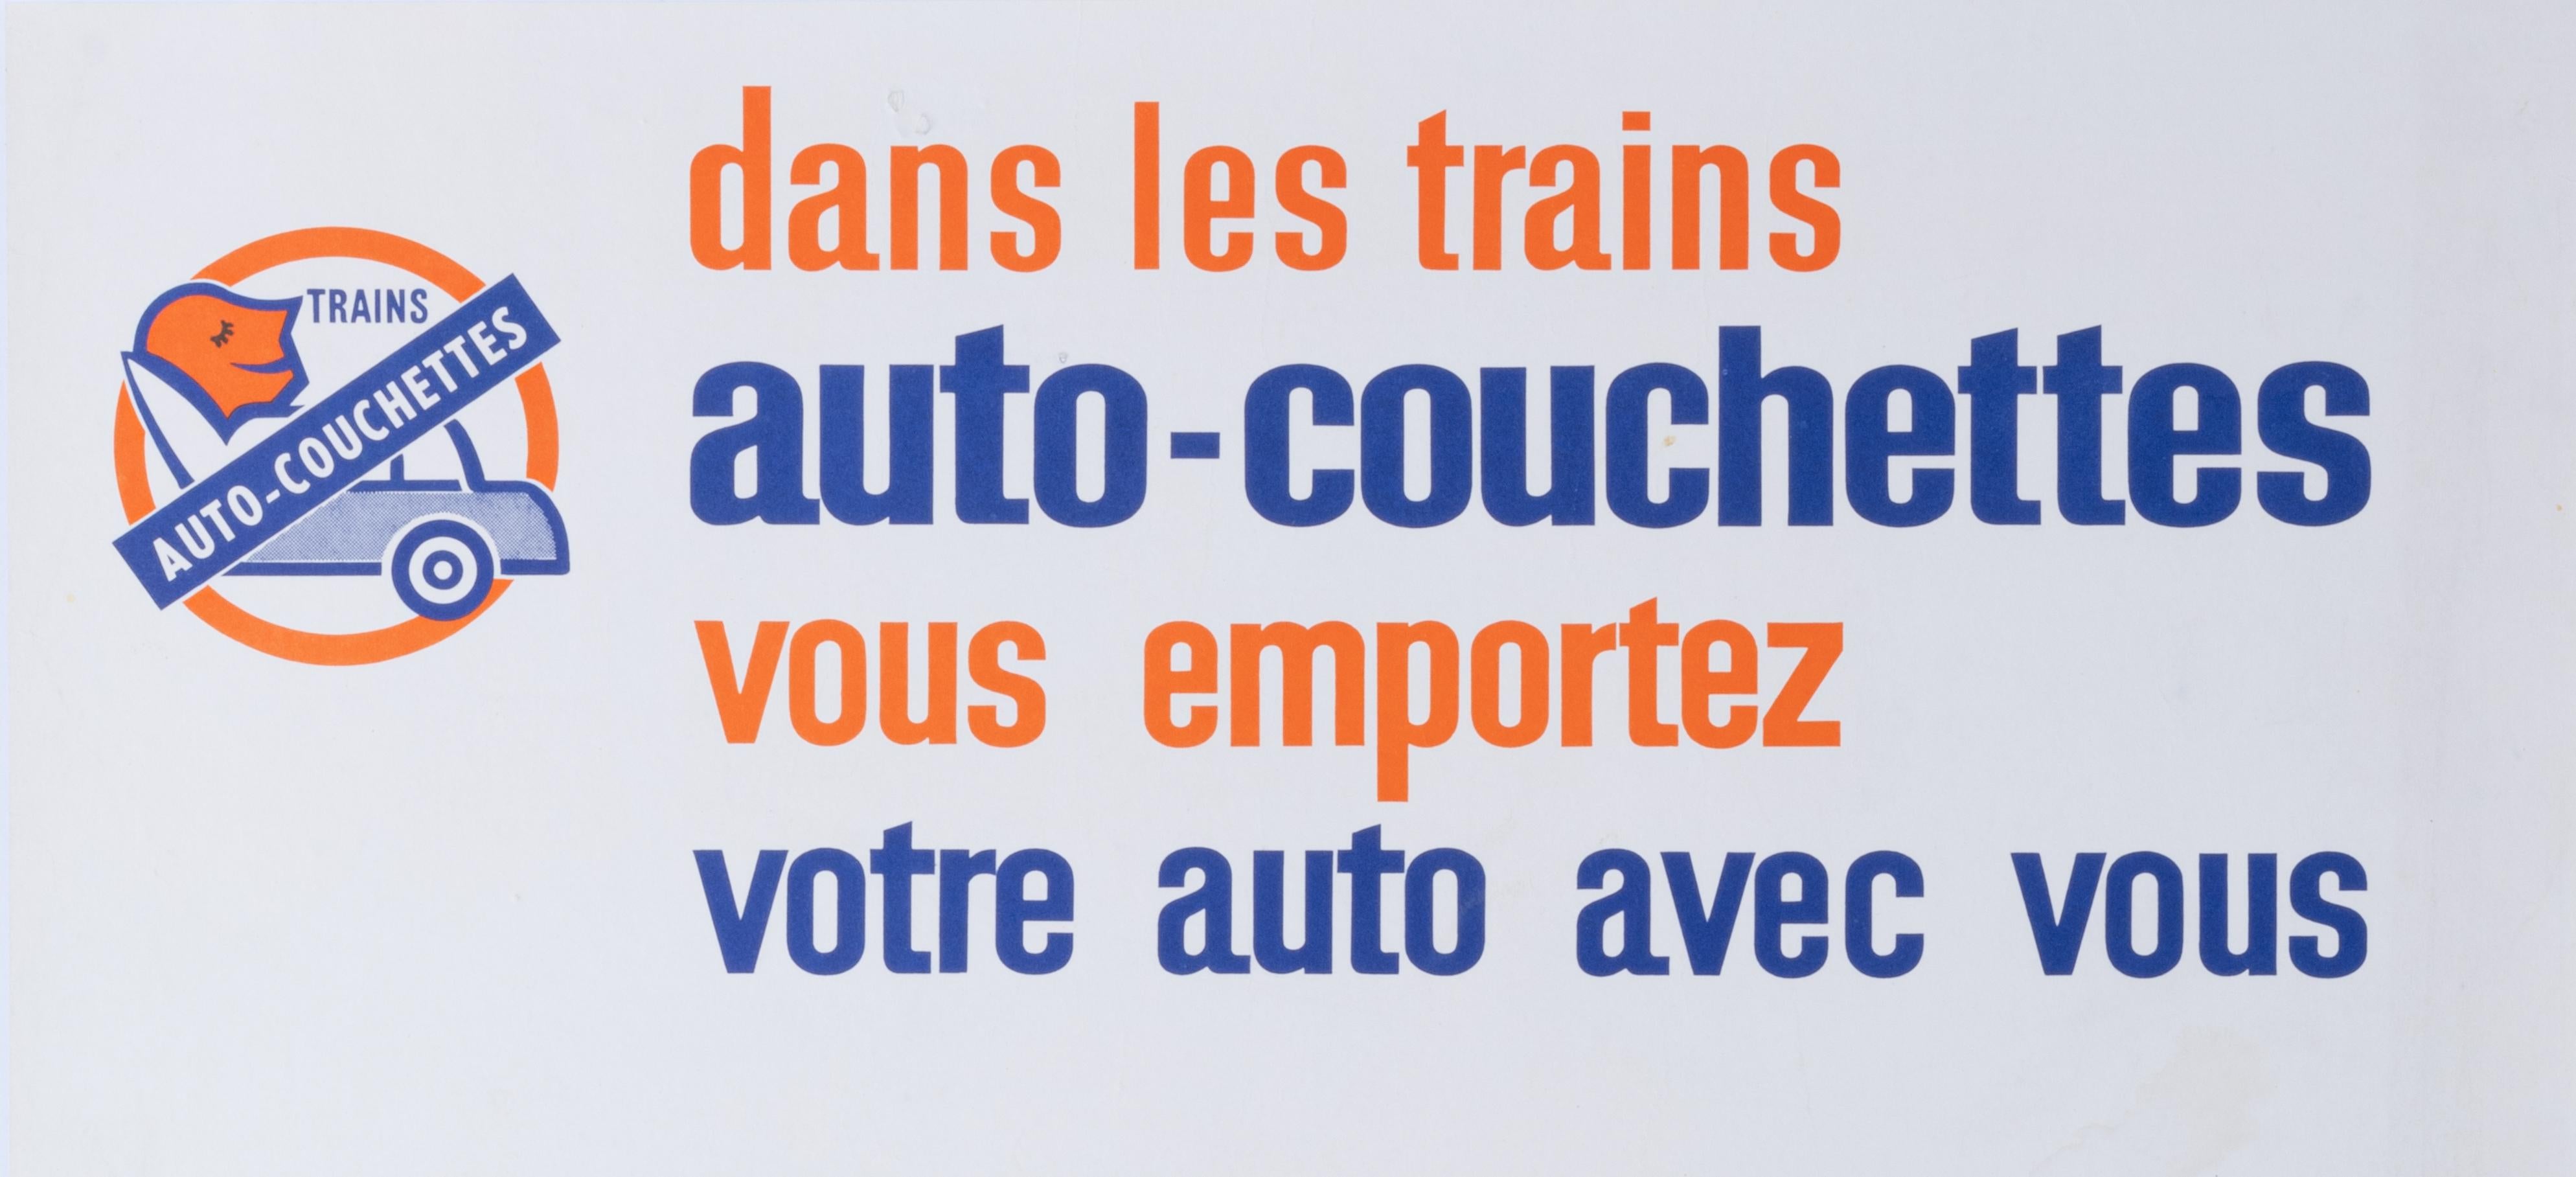 Cette affiche de la Société Nationale des Chemins de Fer Français (SNCF) a été réalisée en 1963 par Albert Brenet pour promouvoir les voyages en wagons-lits en France.

Artistics : Albert Brenet (1903 - 2005)
Titre : Dans les trains auto-couchettes